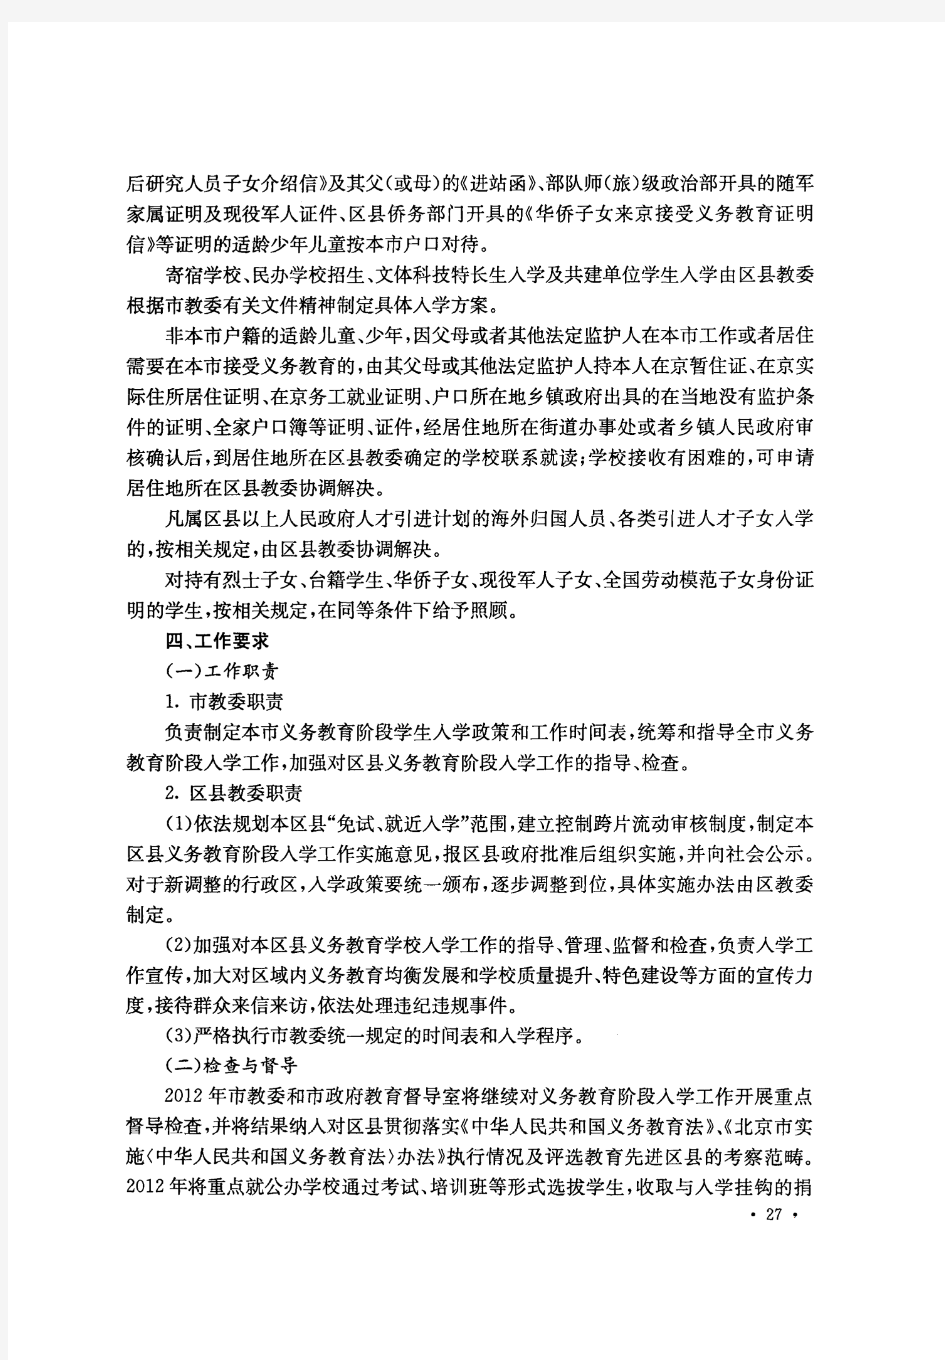 北京市教育委员会关于2012年义务教育阶段入学工作的意见.pdf